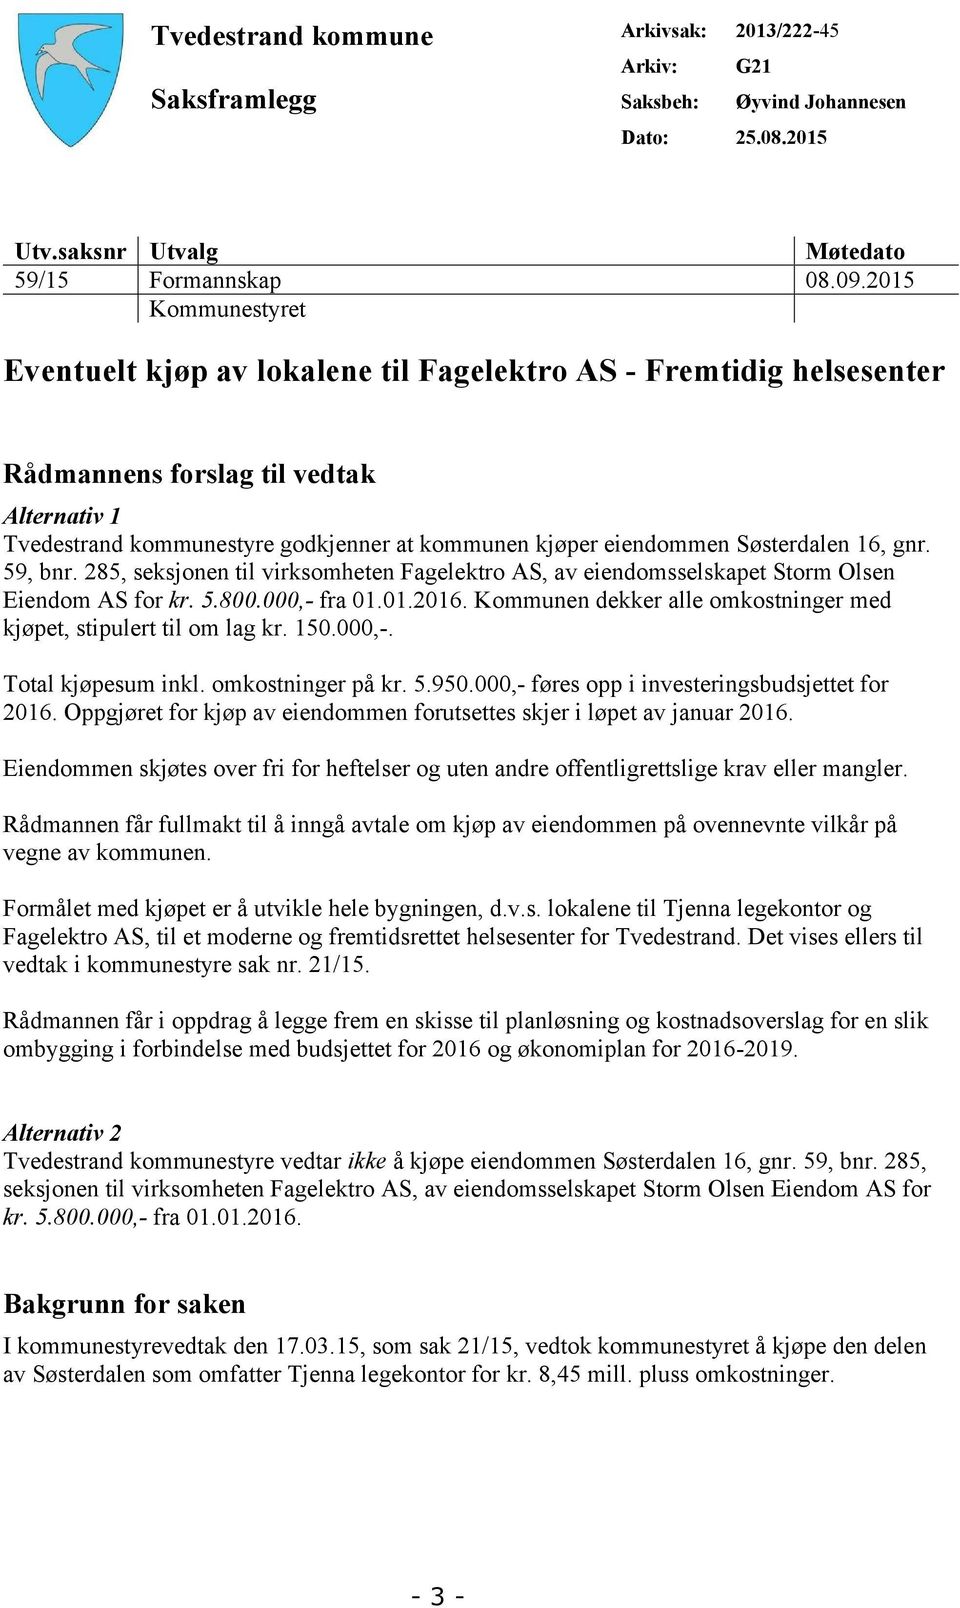 Søsterdalen 16, gnr. 59, bnr. 285, seksjonen til virksomheten Fagelektro AS, av eiendomsselskapet Storm Olsen Eiendom AS for kr. 5.800.000,- fra 01.01.2016.